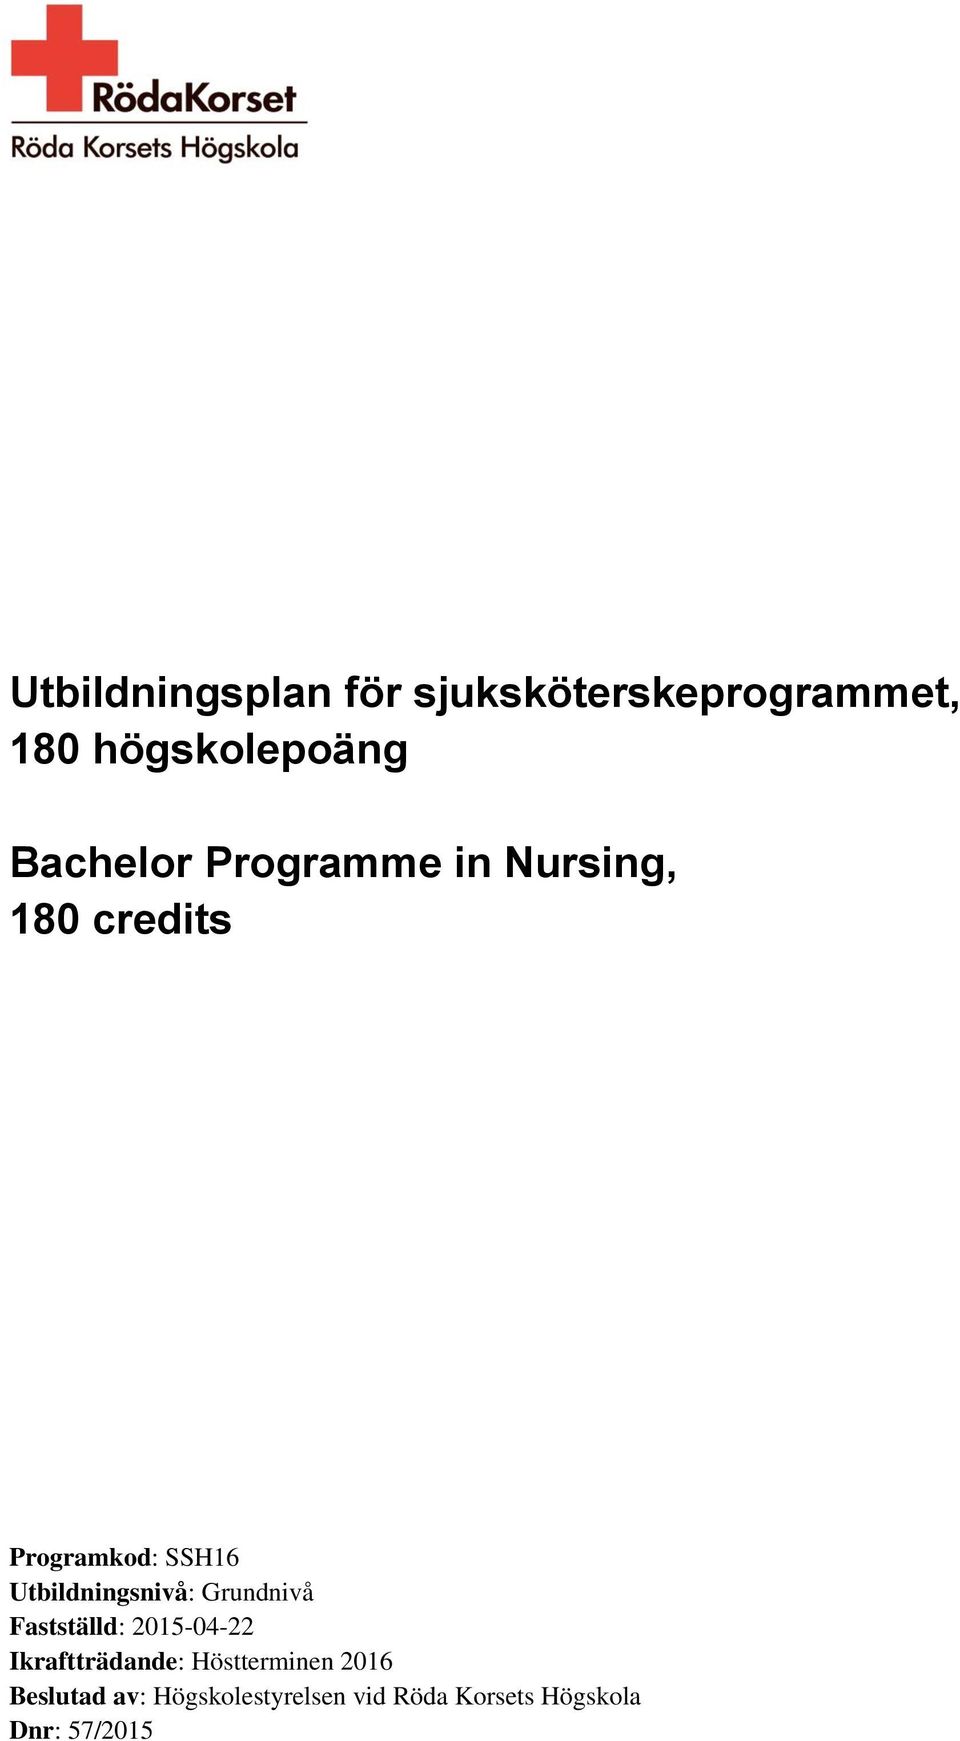 Utbildningsplan för sjuksköterskeprogrammet, 180 högskolepoäng ...